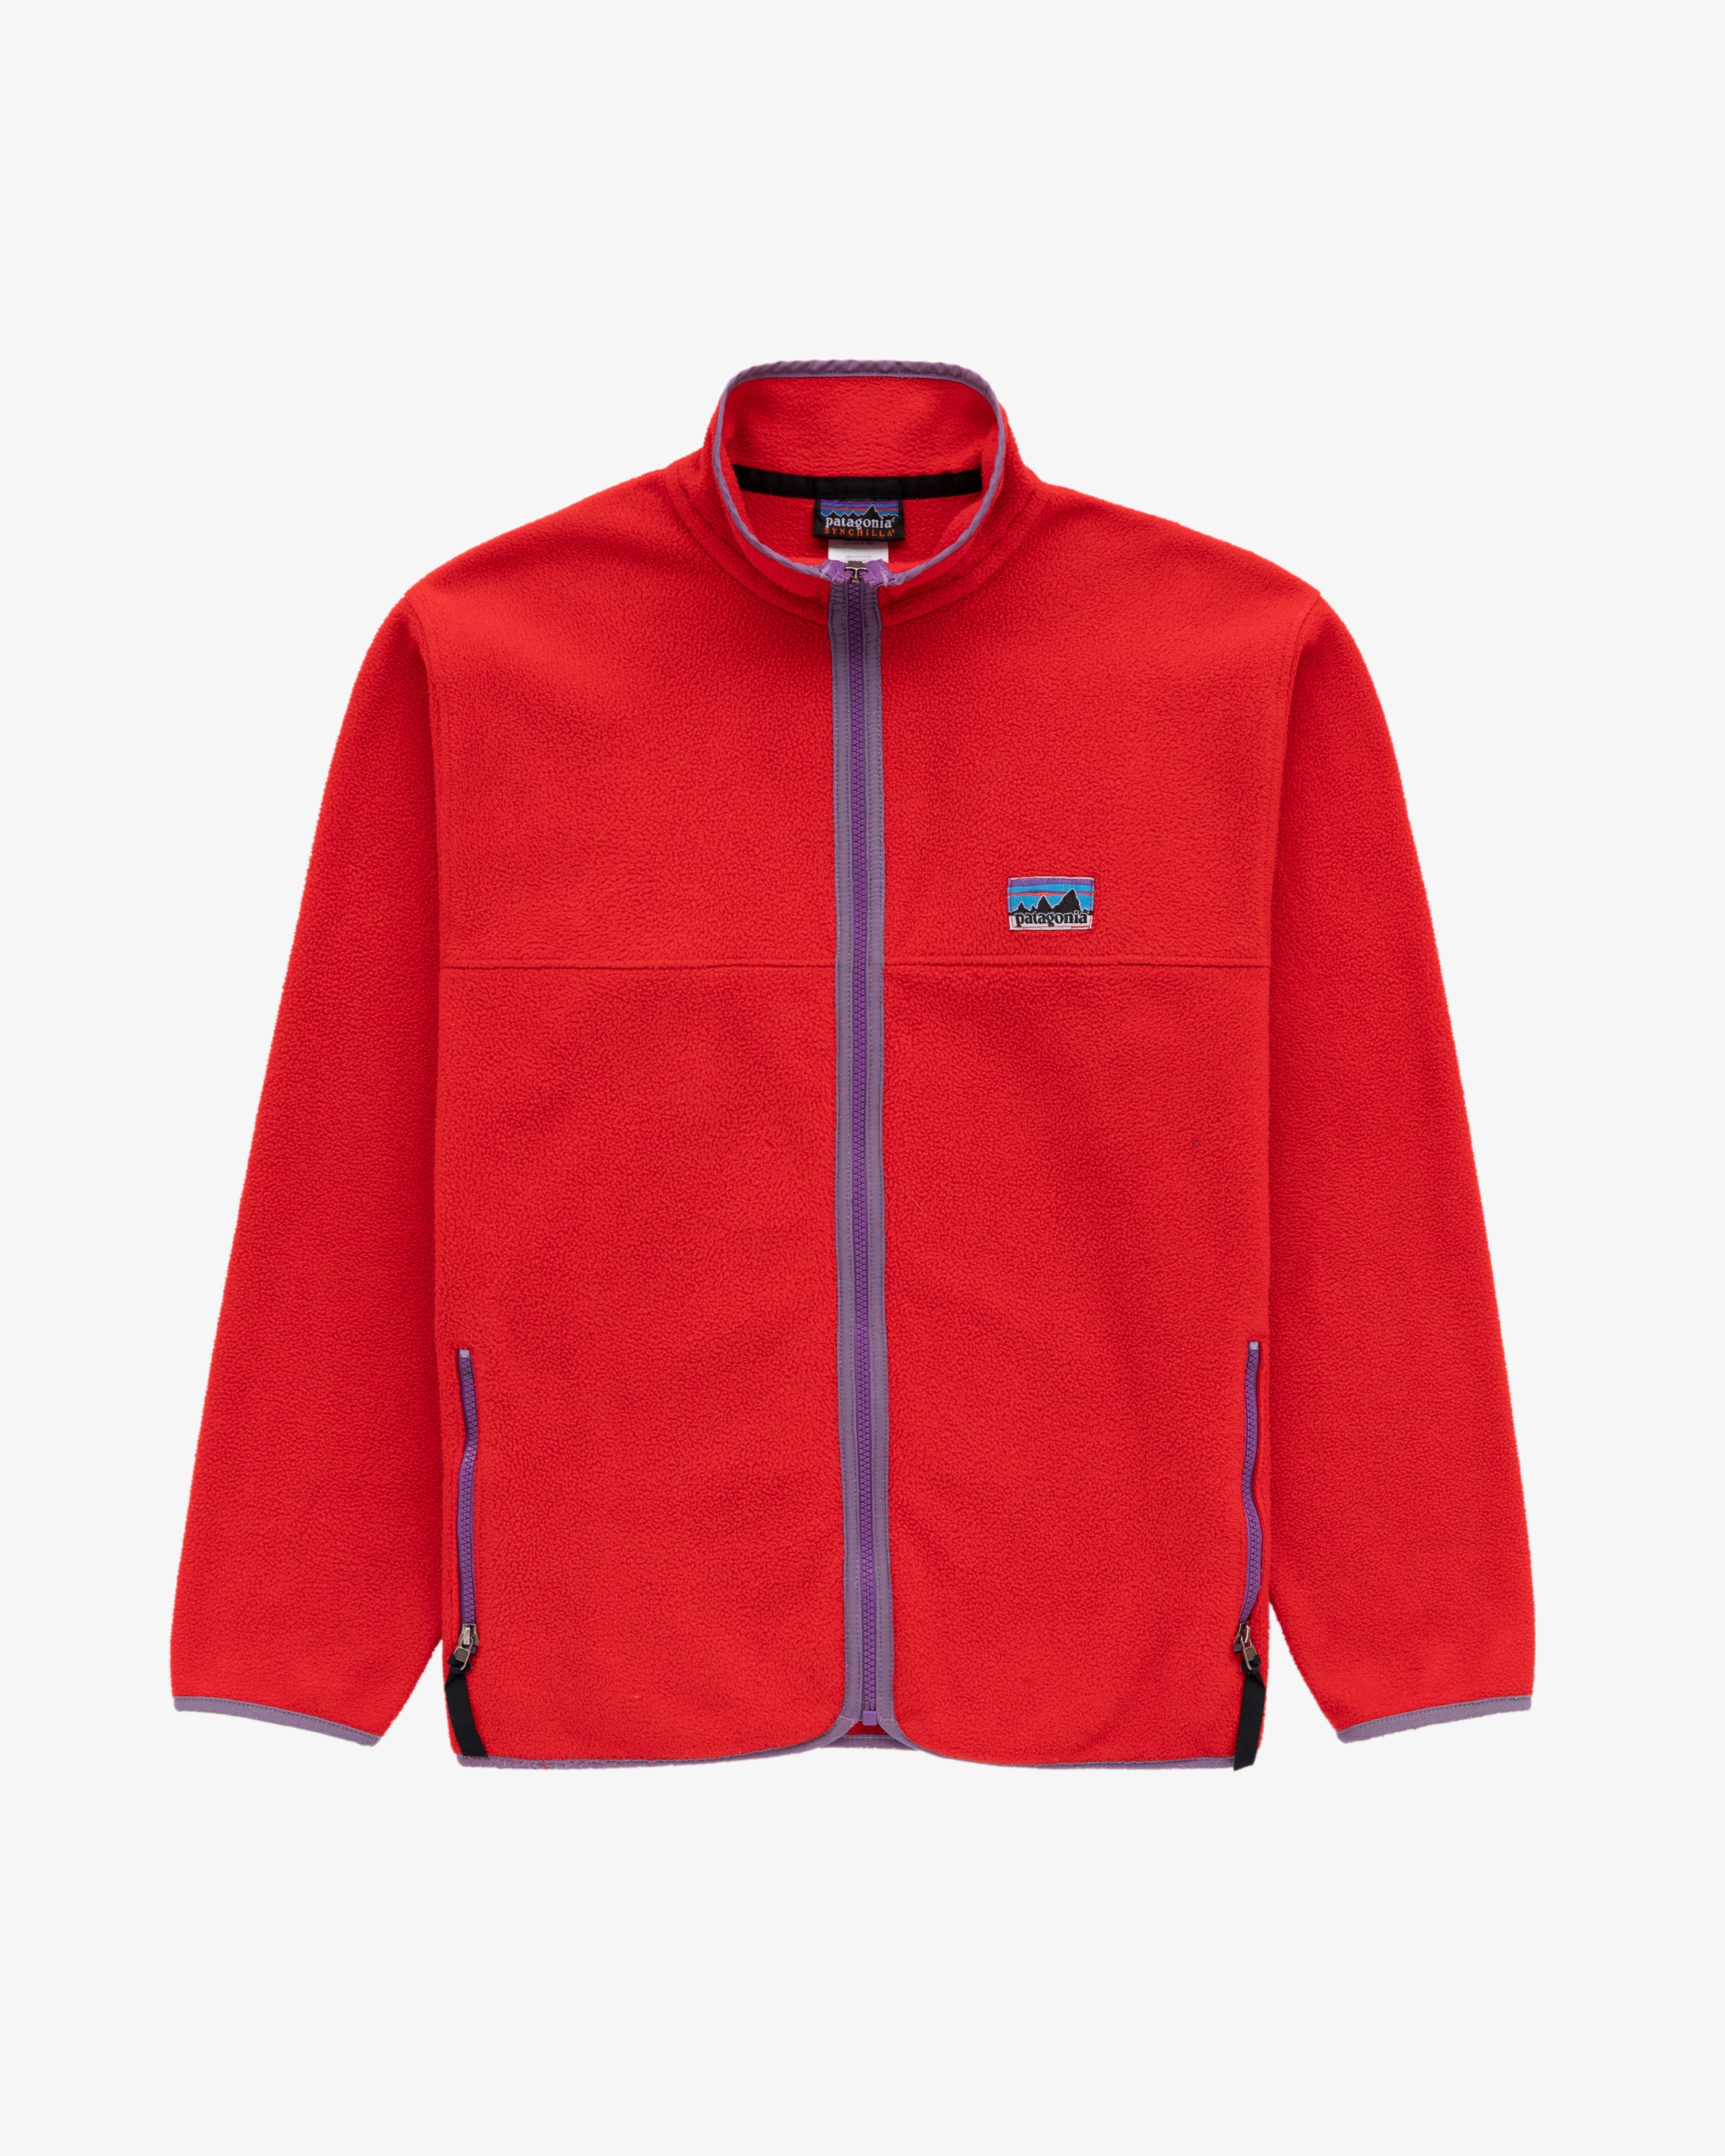 Vintage Patagonia Full-Zip Fleece Jacket